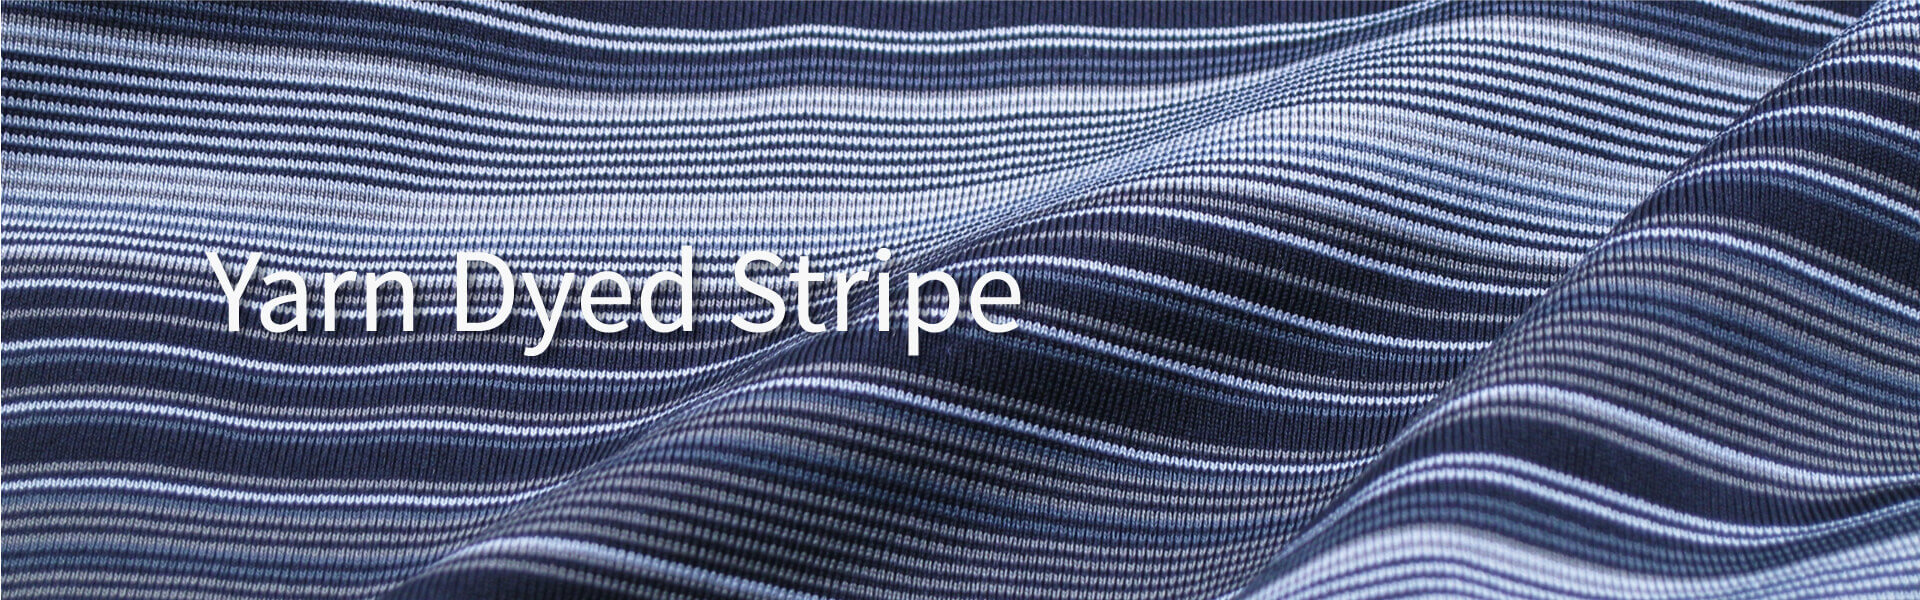 yarn-dyed-stripe